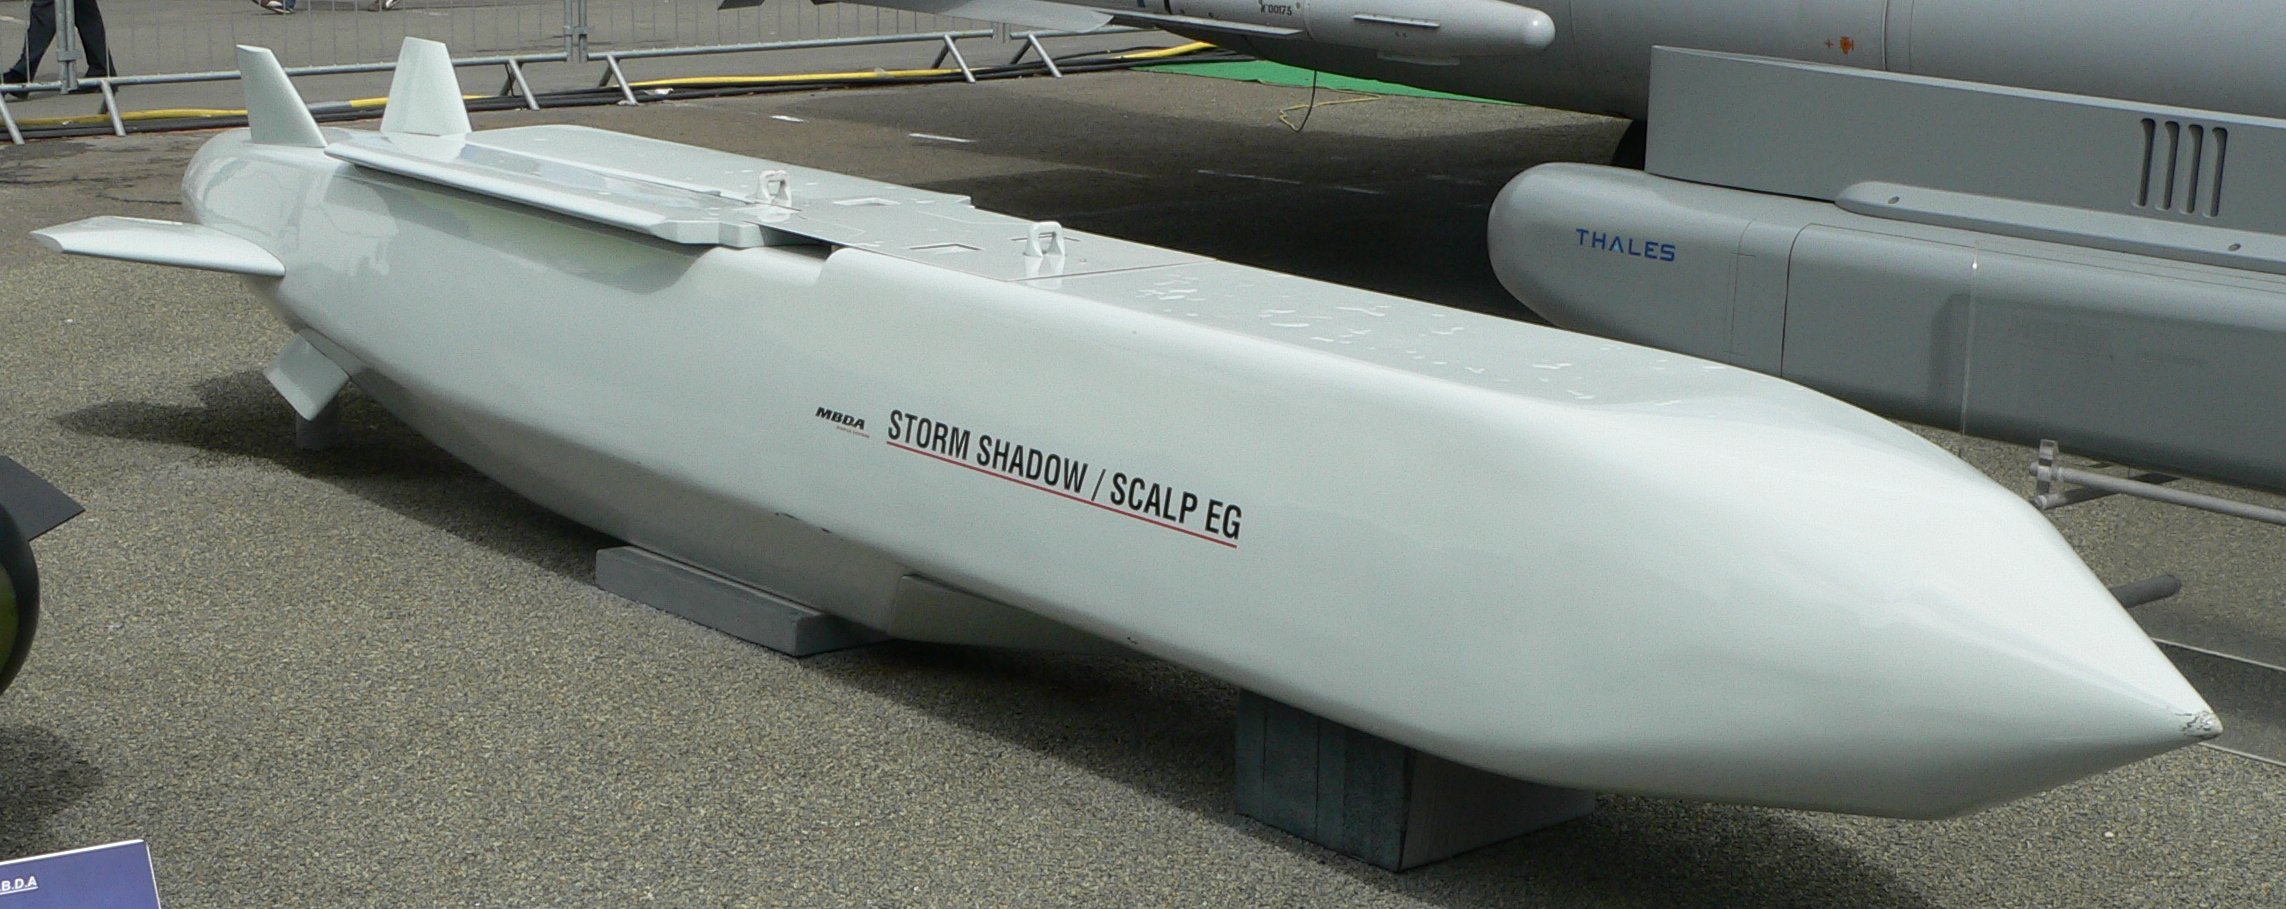 Großbritannien kann die Ukraine mit Storm Shadow Cruise Missiles (SCALP) beliefern, die von einem Flugzeug aus gestartet werden und Ziele in einer Entfernung von etwa 600 km treffen können.